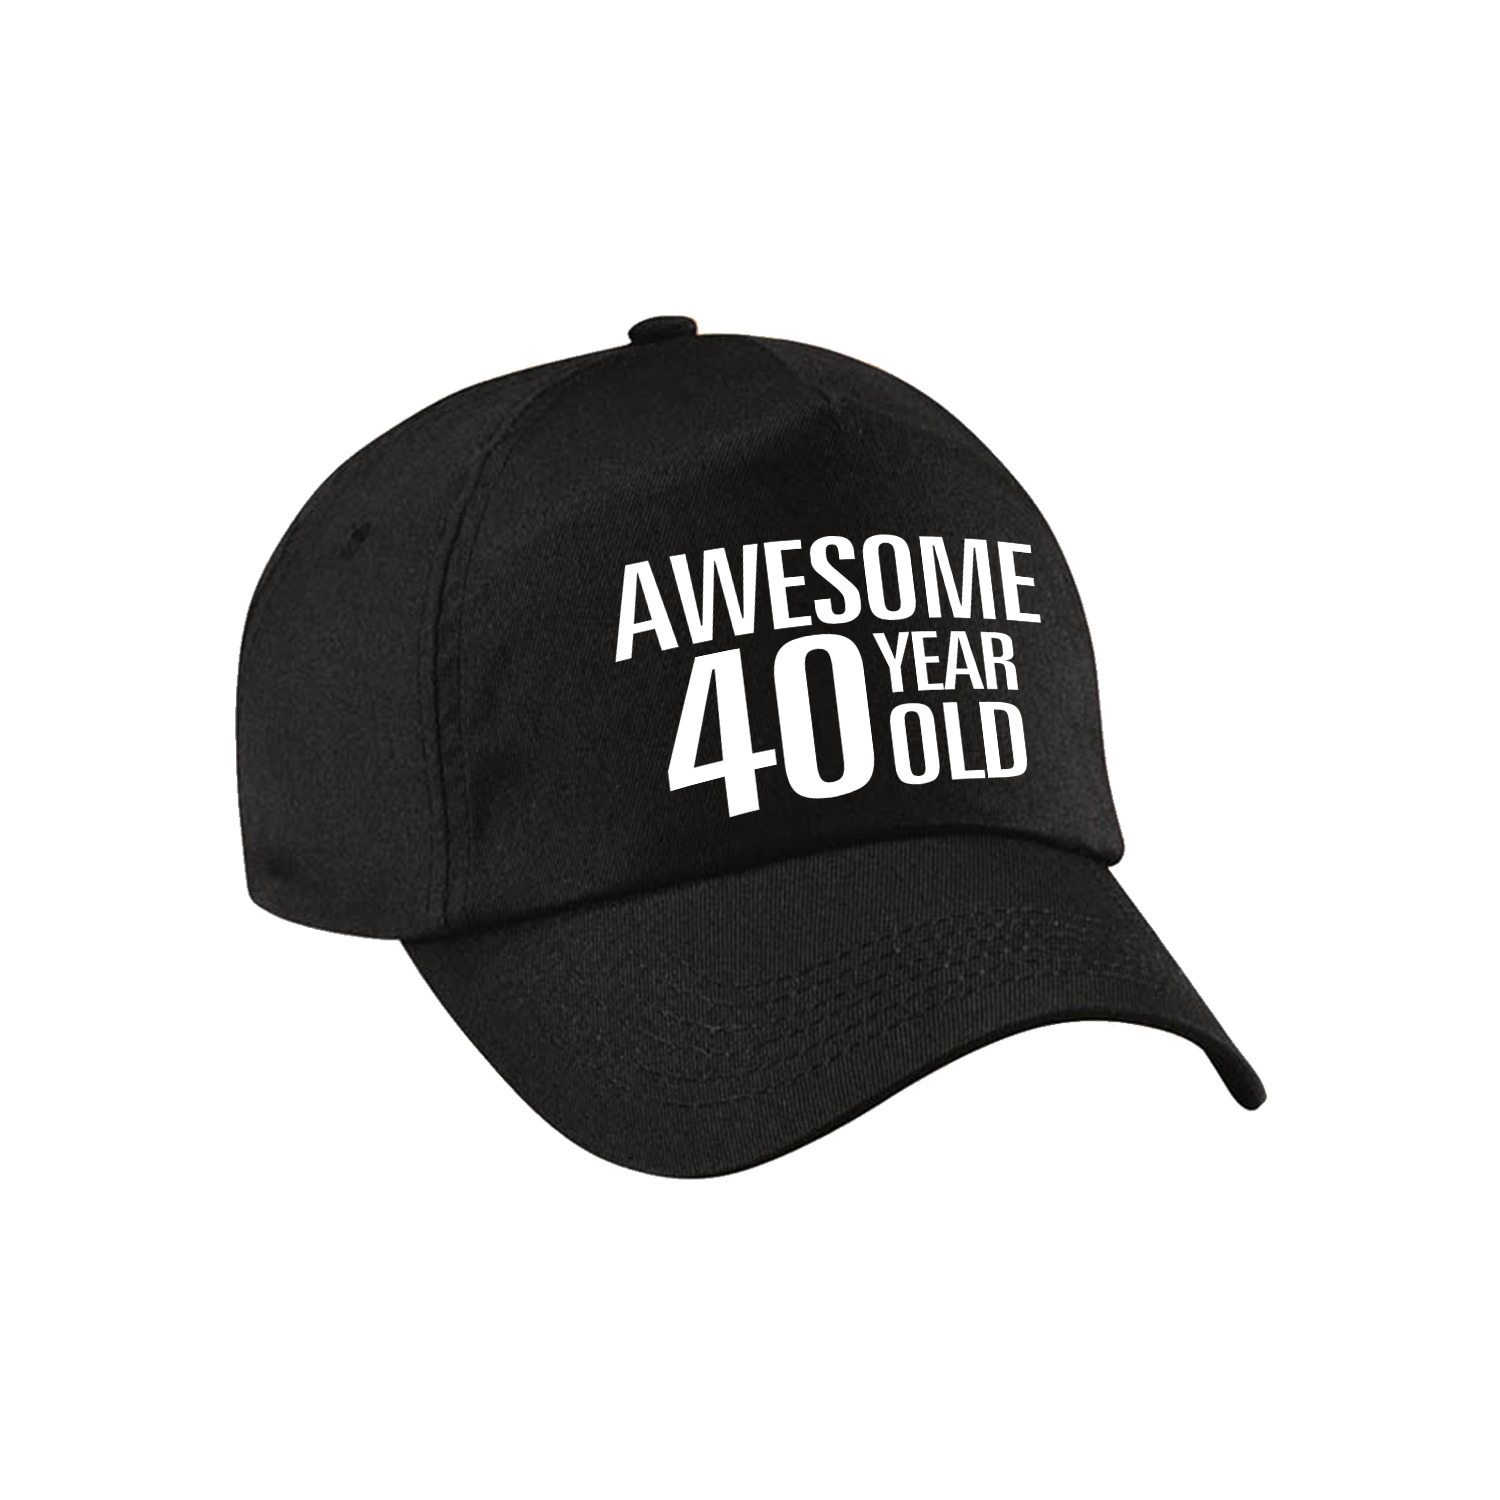 Awesome 40 year old verjaardag pet / cap zwart voor dames en heren